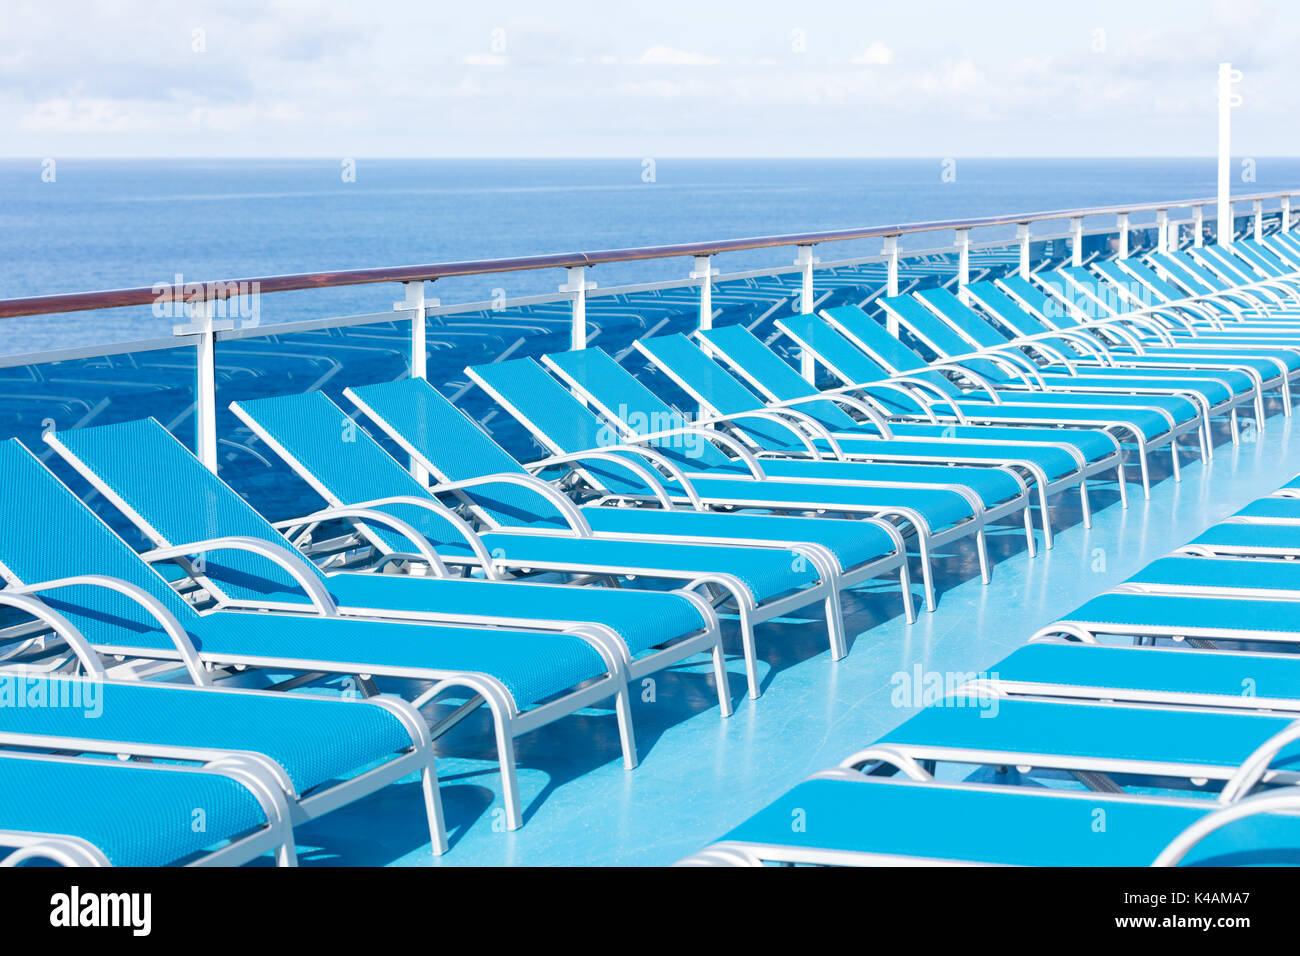 Chaises longues bleu sur le pont d'un arrière-plan avec l'océan Atlantique Banque D'Images